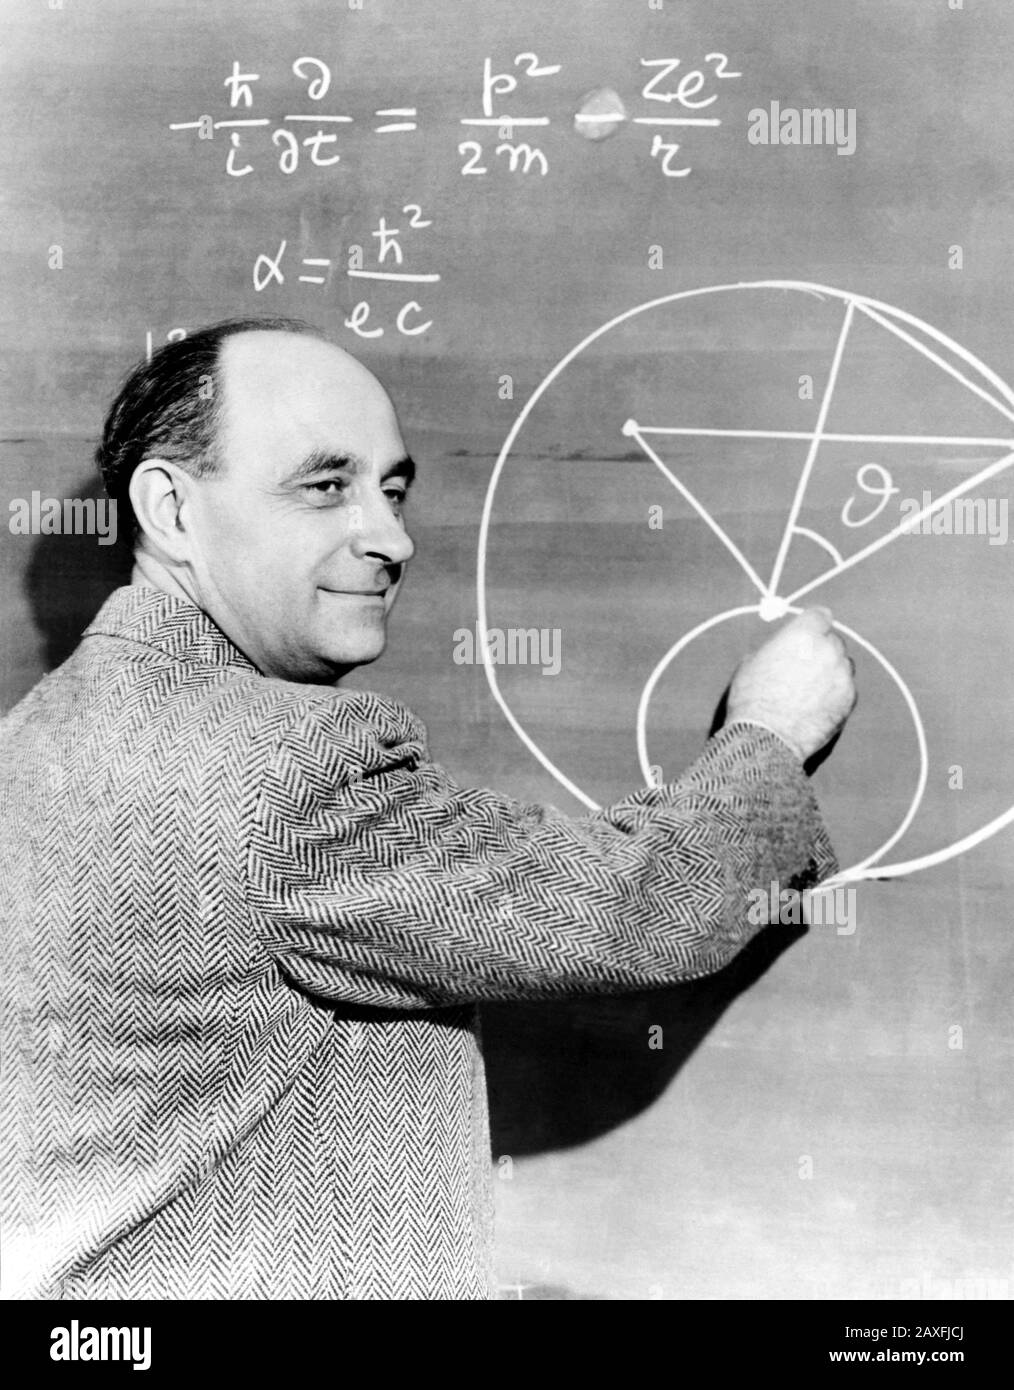 Vierziger Jahre, USA: Der italienische Physiker ENRICO FERMI ( Roma 1901 - Chicago, USA 1954 ), Wurde 1938 mit dem Physik-Nobelpreis ausgezeichnet - FISICO - FISICA - ATOMO - ATOMICO - Radiotivita - SCIENZIATO - SCIENZA - PHYSIK - ATOM - ATOM - RADIOAKTIVITÄT - WISSENSCHAFT - WISSENSCHAFTLER - GESCHICHTE - Formel - lavagna - Fotostoriche - Foto storica - scienziato - Wissenschaftler - Wissenschaftler - Porträt - Ritratto - Physik - FISICA - FISICO - SCIENZA - WISSENSCHAFT - Lächeln - sorriso - PREMIO NOBEL PER LA FISICA © Archivio GBB / Stockfoto